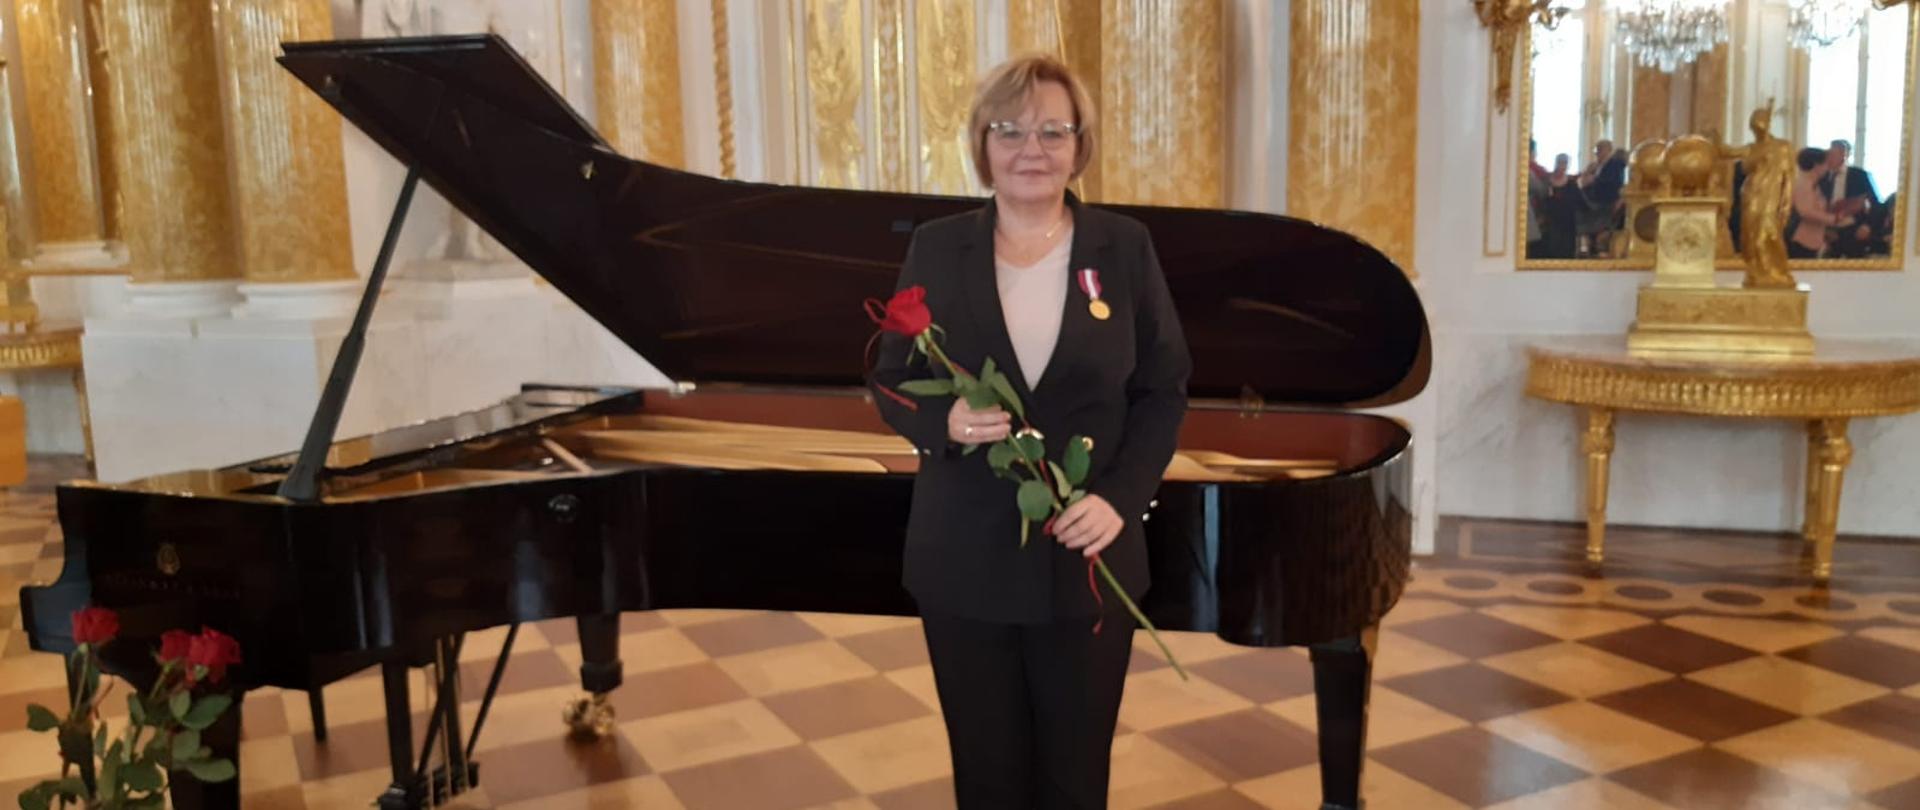 Zdjęcie przedstawia Panią Dorotę Chłopocką podczas uroczystości wręczenia złotego medalu za długoletnią służbę. W tle zdjęcia stoi fortepian.